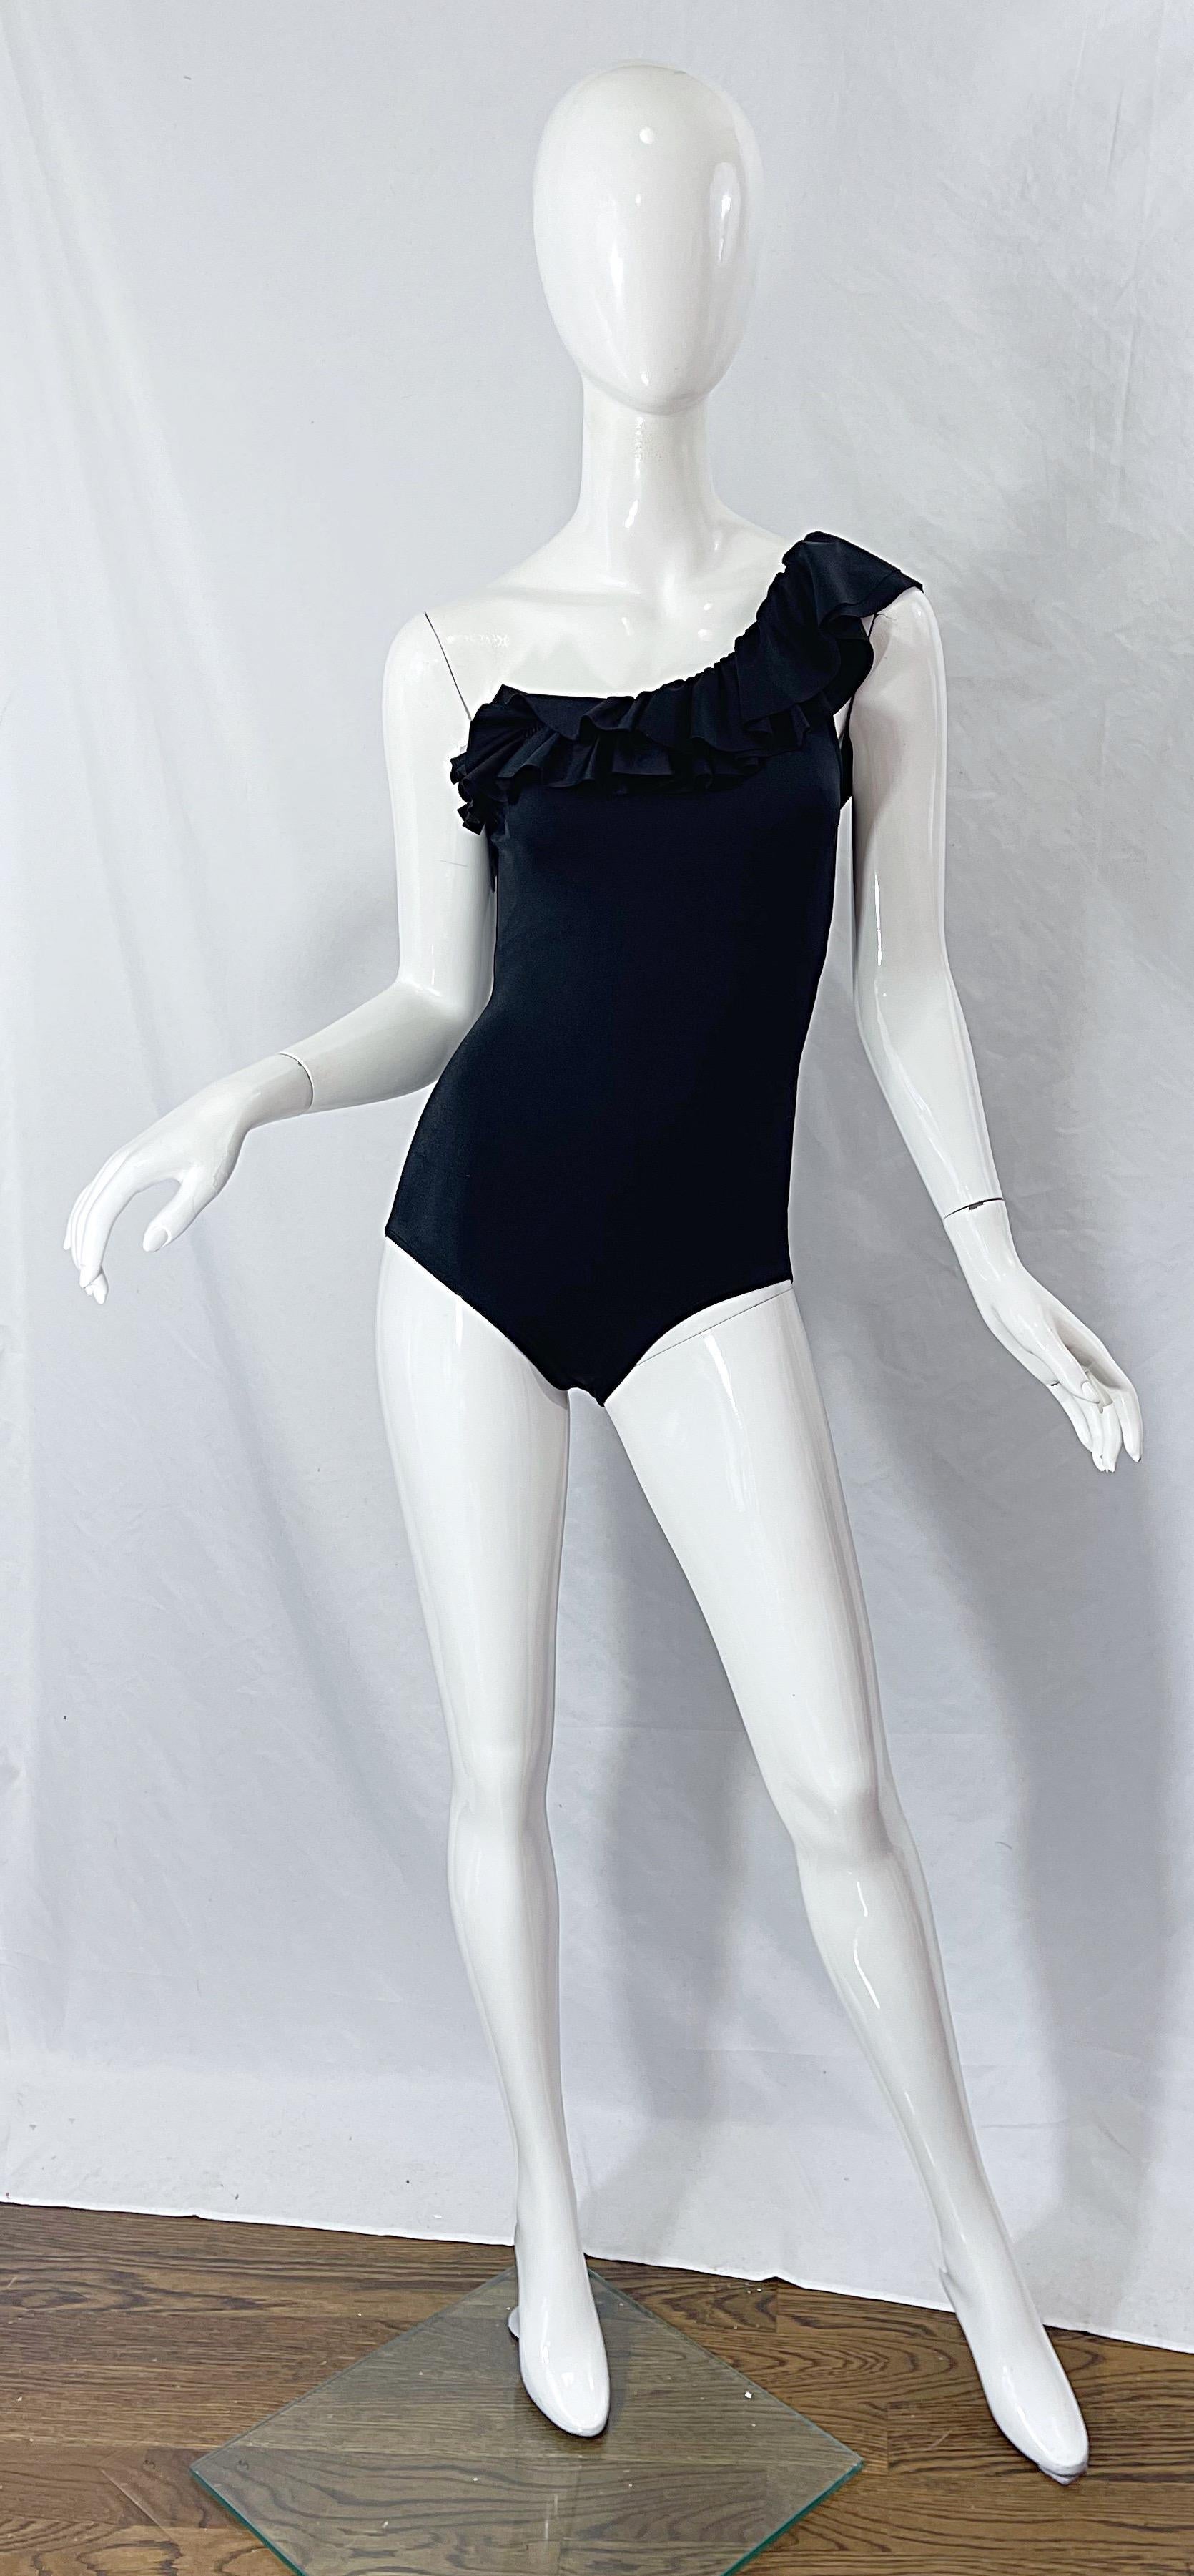 Schmeichelhaft und chic deadstock (nie getragen mit Original-Tags) späten 1980er Jahren Vintage BILL BLASS eine Schulter ein Stück Badeanzug oder Bodysuit! Mit einem Ausschnitt im Flamenco-Stil und drei Lagen von Rüschen entlang der Brust. Wird